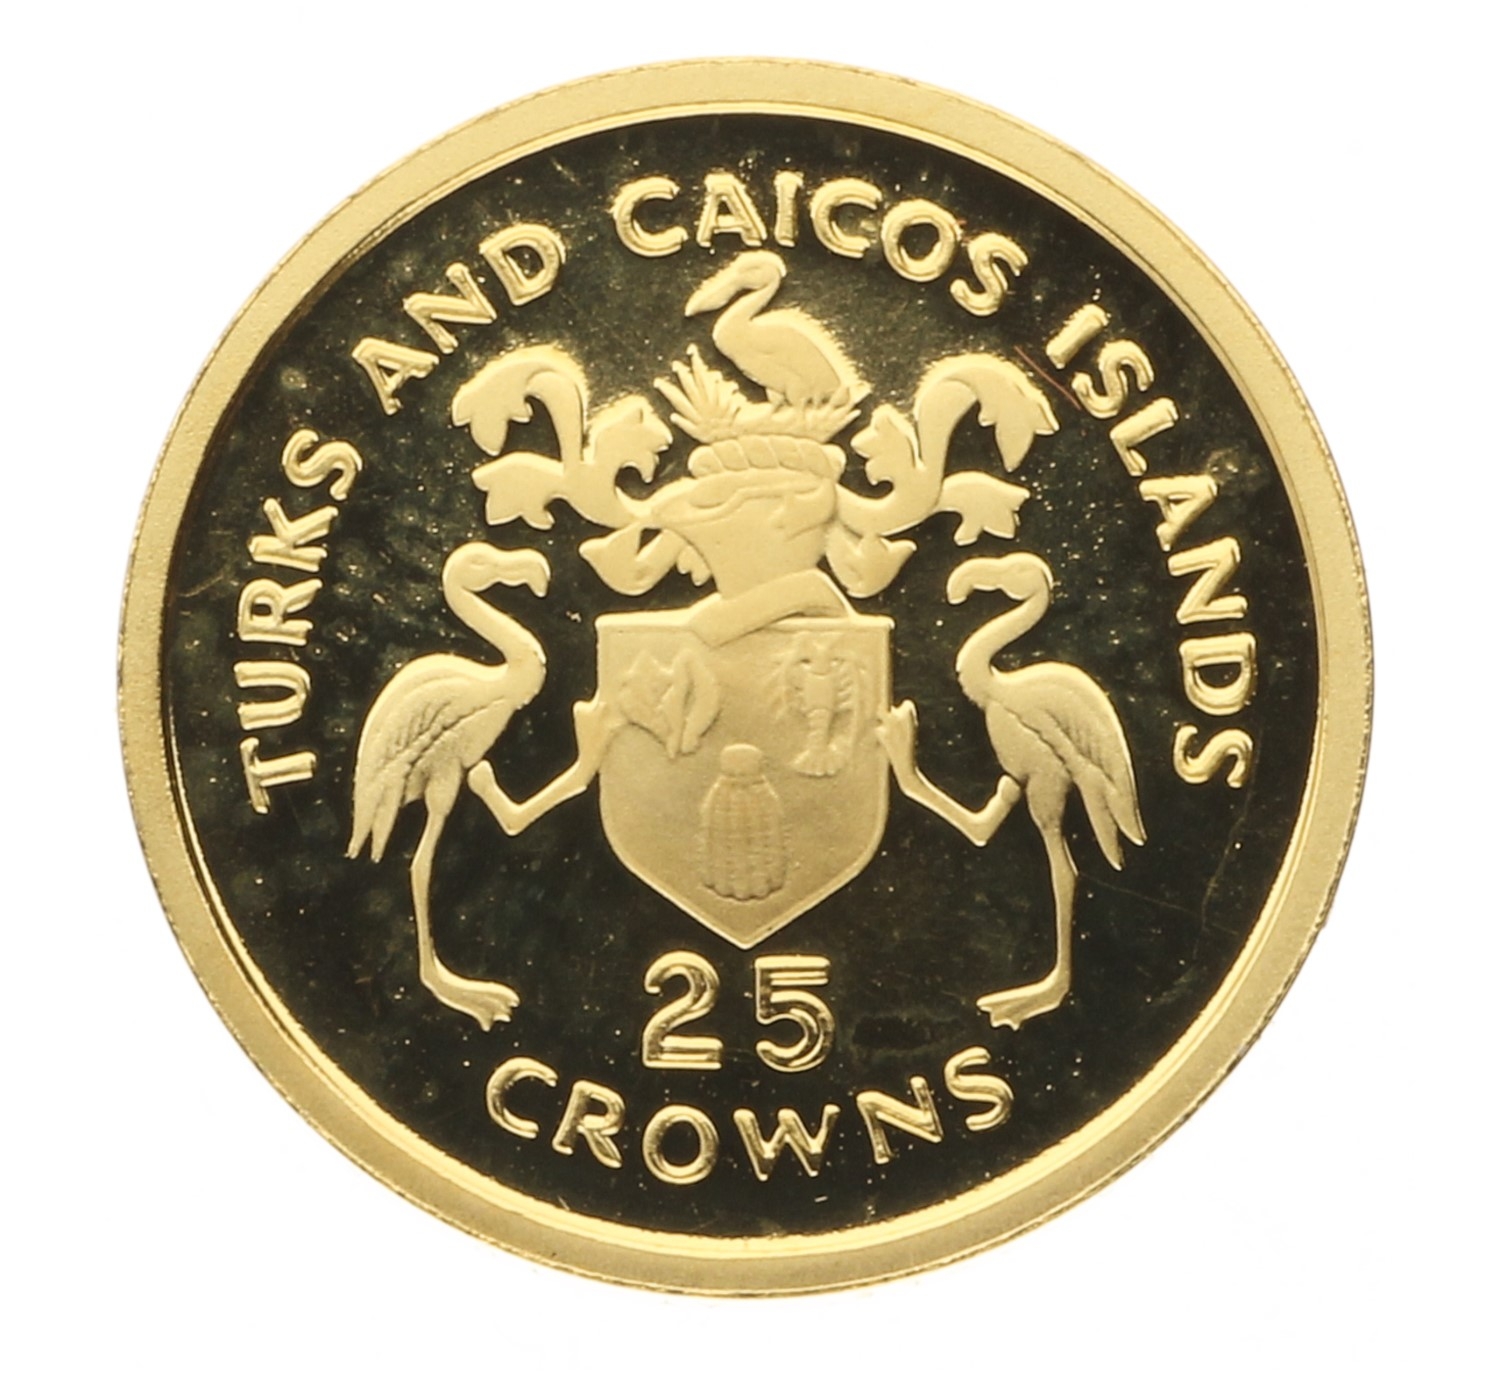 25 Crowns - Turks & Caicos Islands - 1977